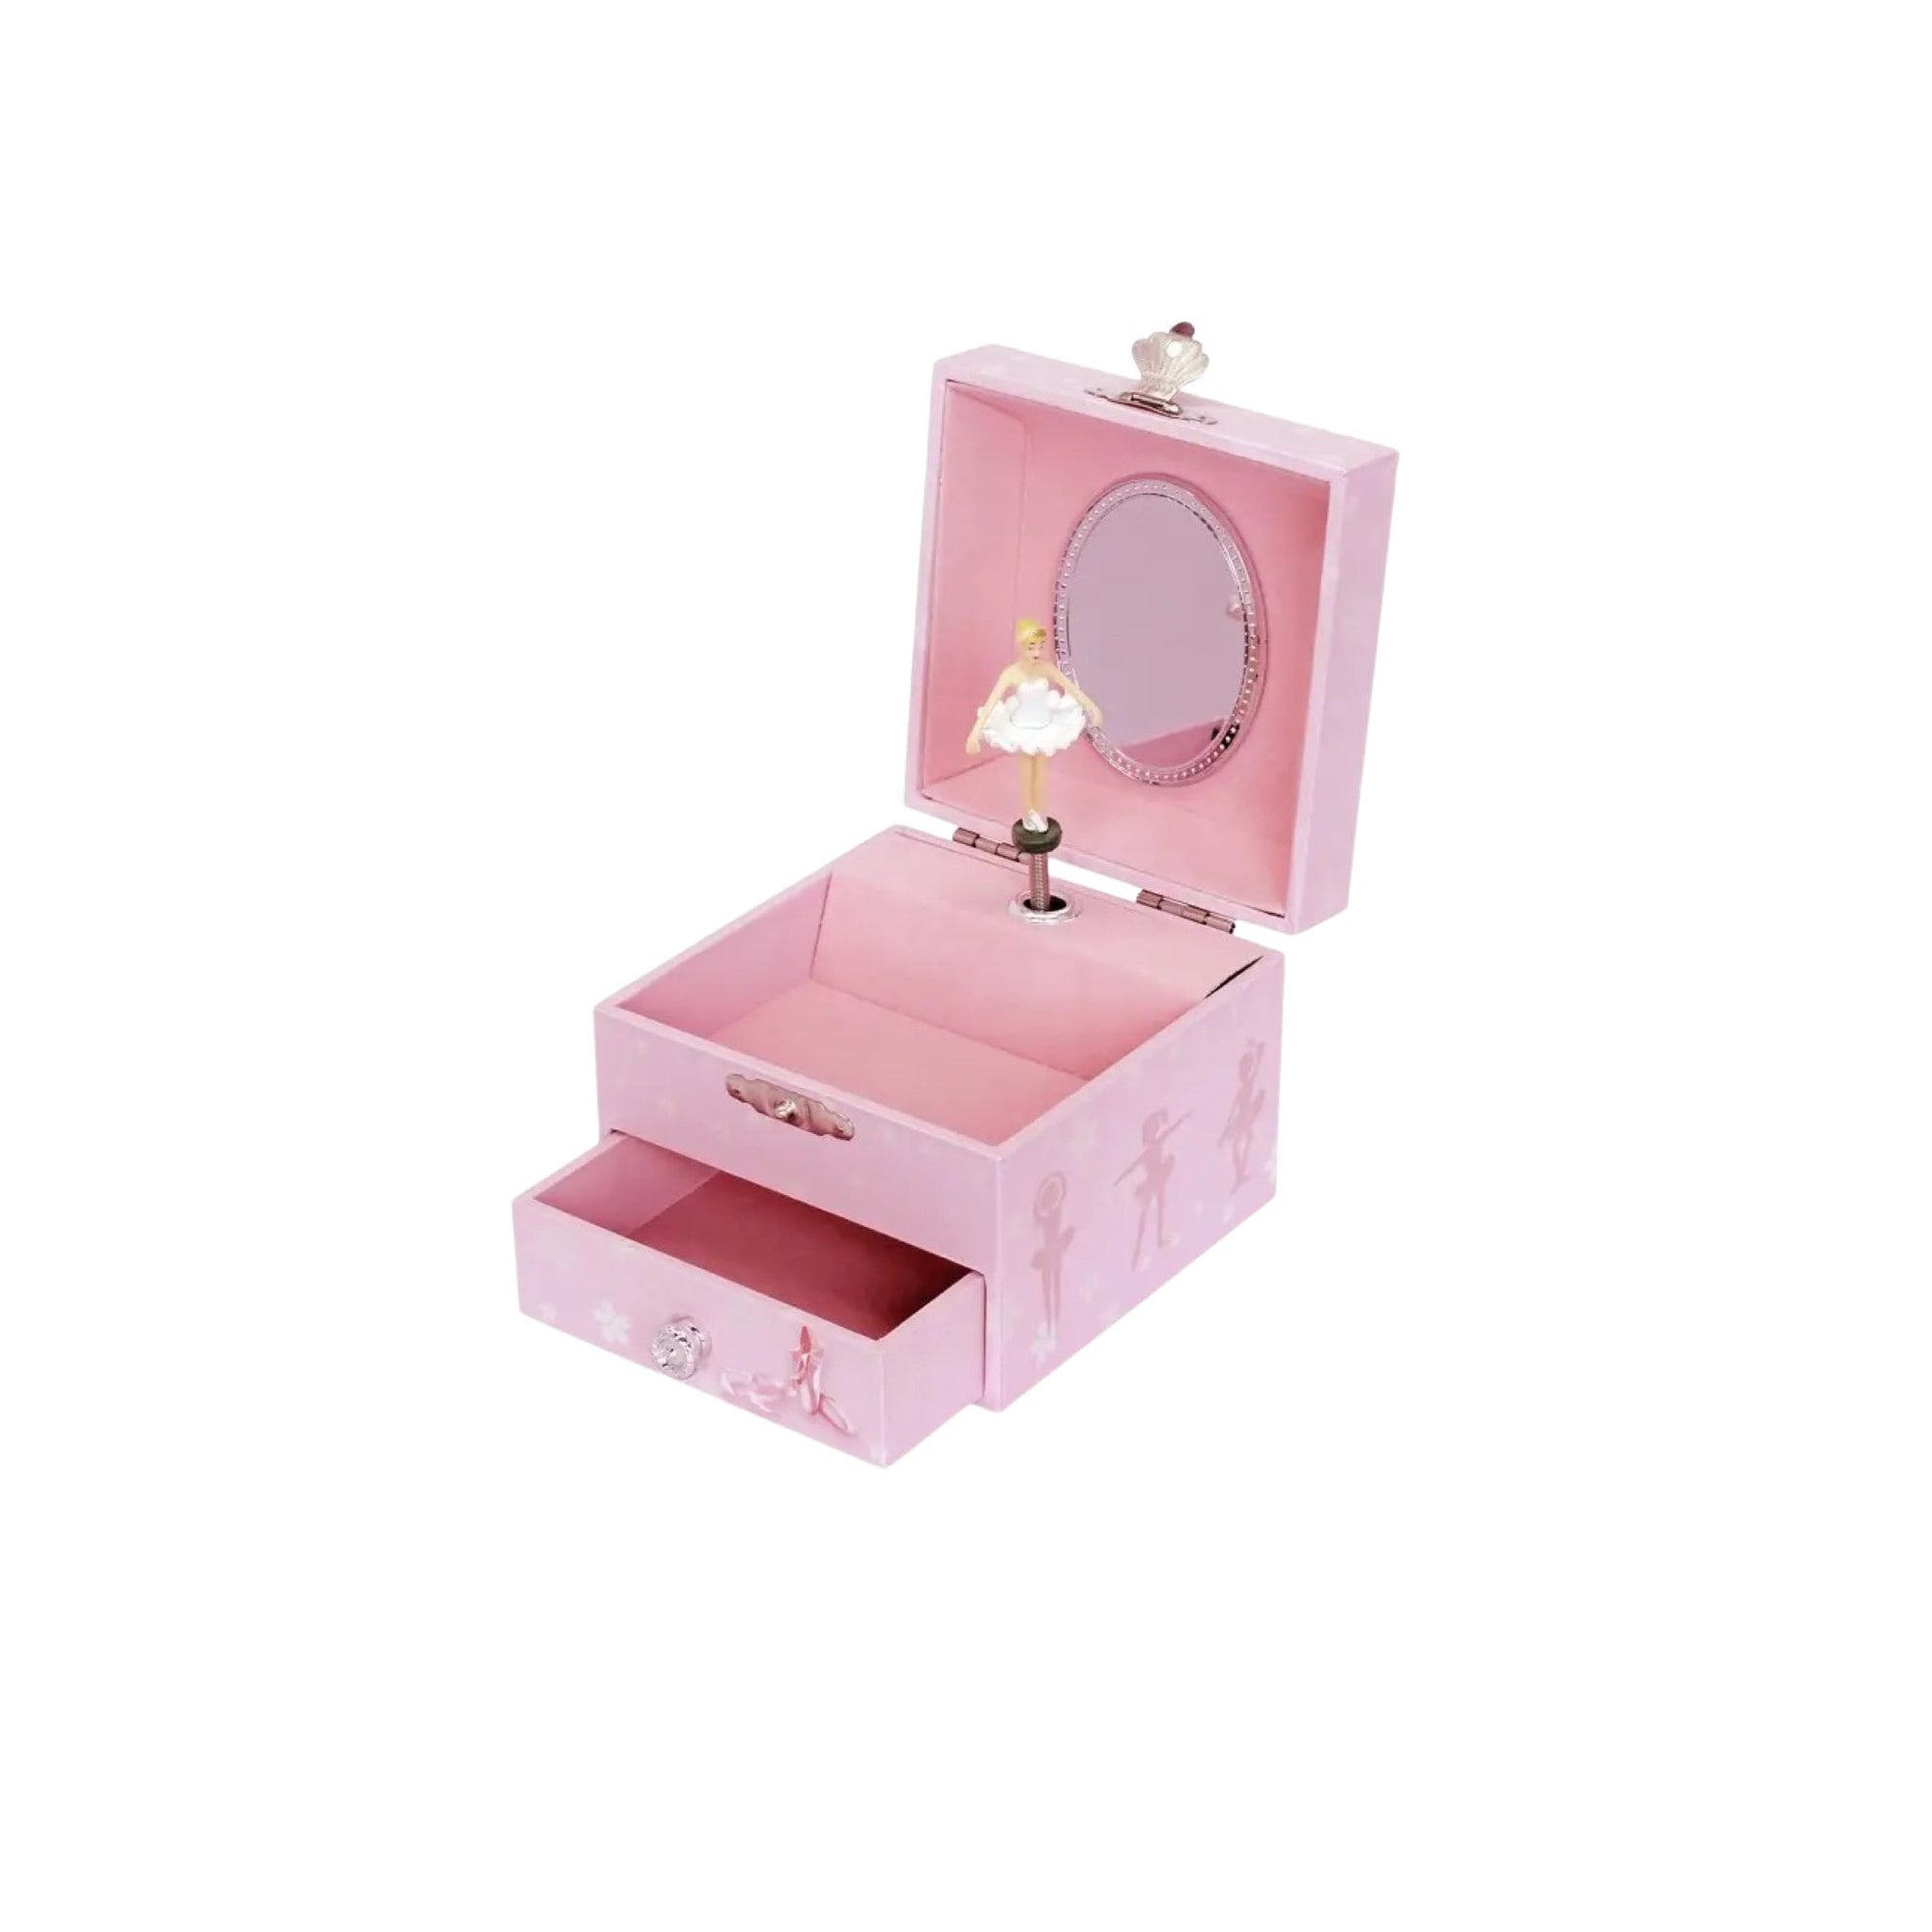 Ballerina Slippers Musical Jewelry Box